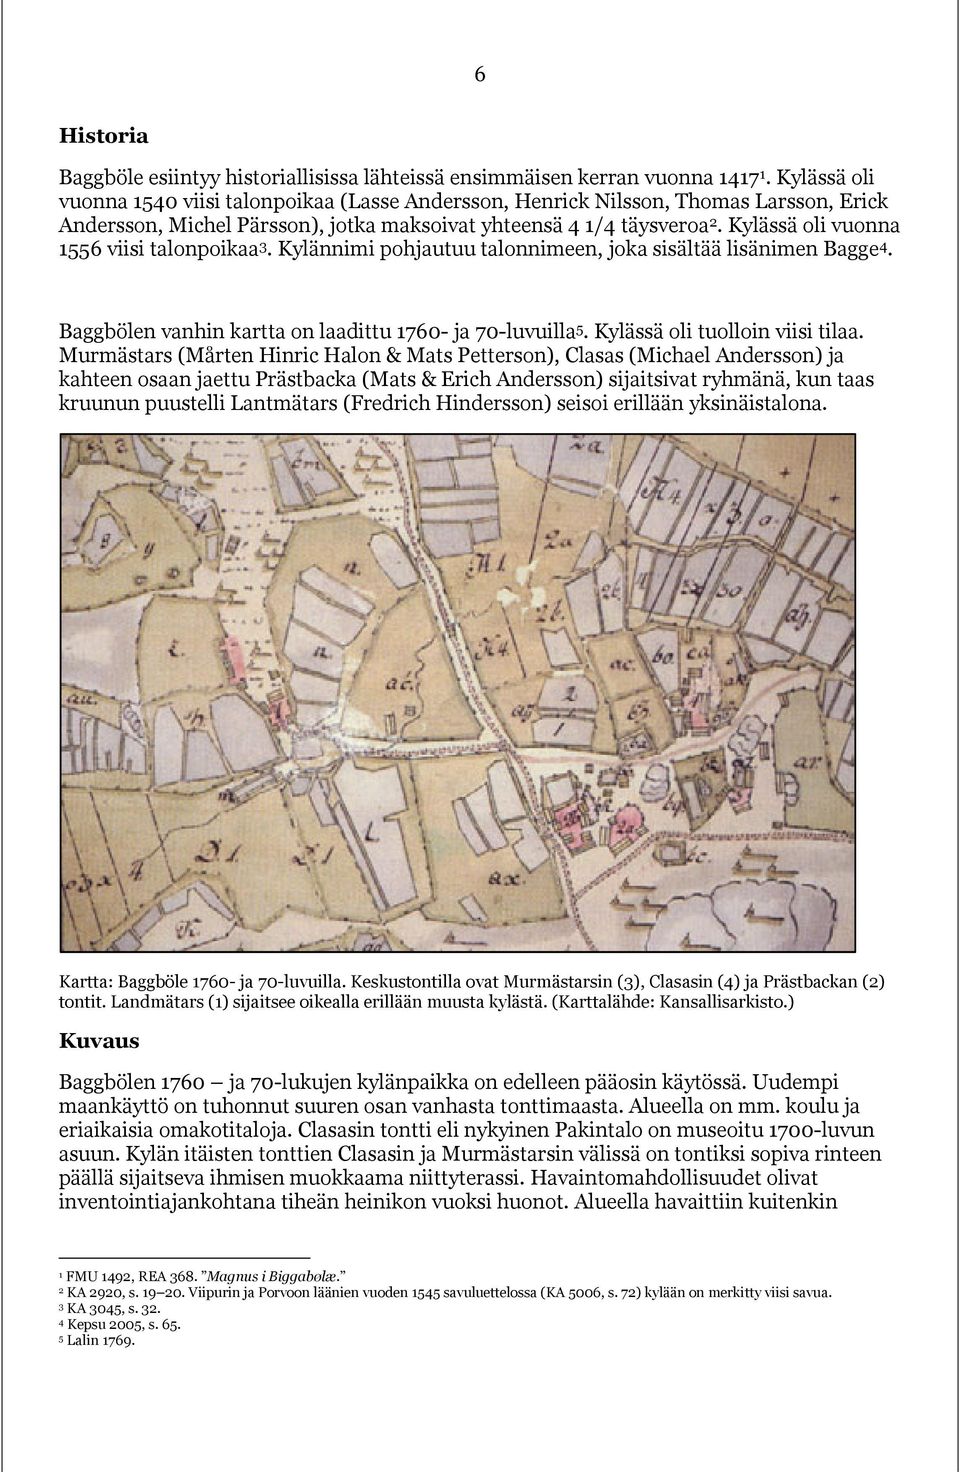 Kylässä oli vuonna 1556 viisi talonpoikaa 3. Kylännimi pohjautuu talonnimeen, joka sisältää lisänimen Bagge 4. Baggbölen vanhin kartta on laadittu 1760- ja 70-luvuilla 5.